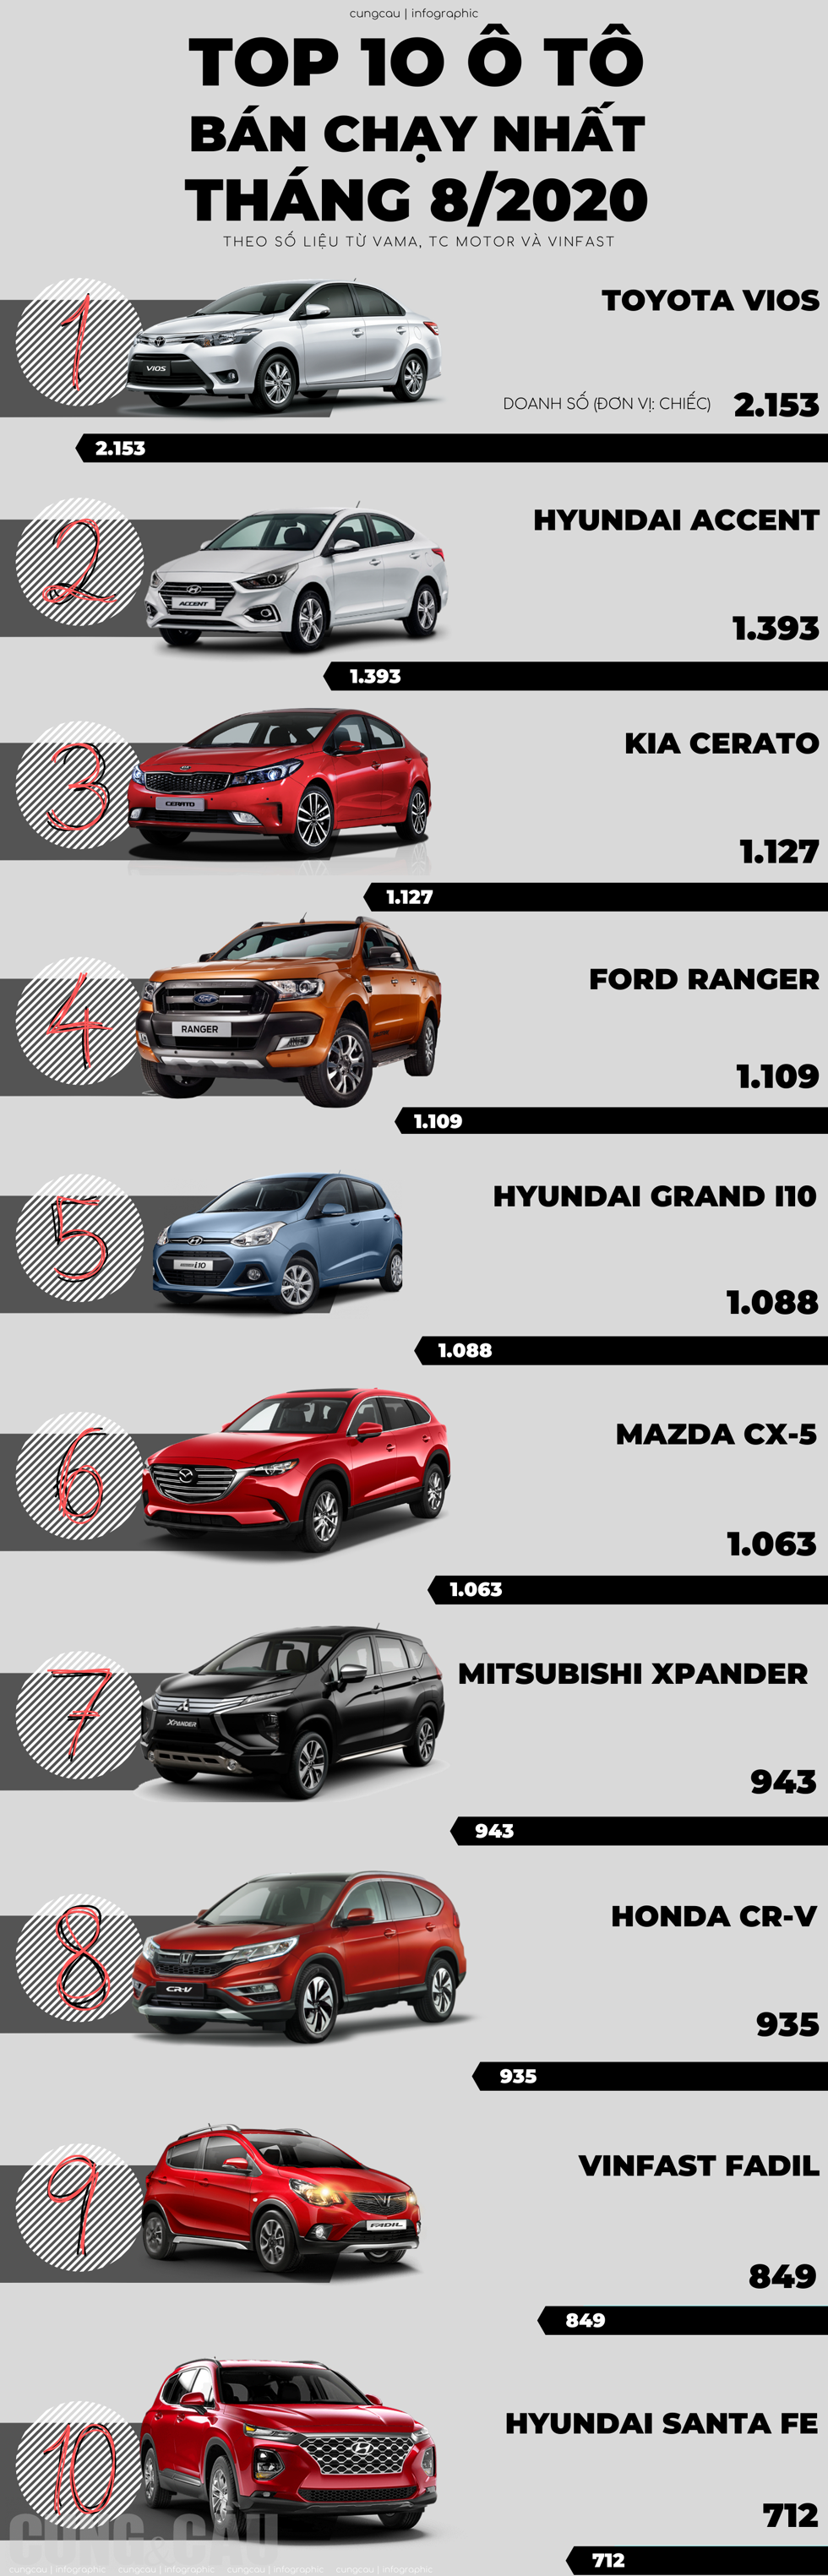 Top 10 ô tô bán chạy nhất tháng 8/2020: Grand i10, CR-V vươn lên mạnh mẽ trong khi Fadil, Xpander giảm